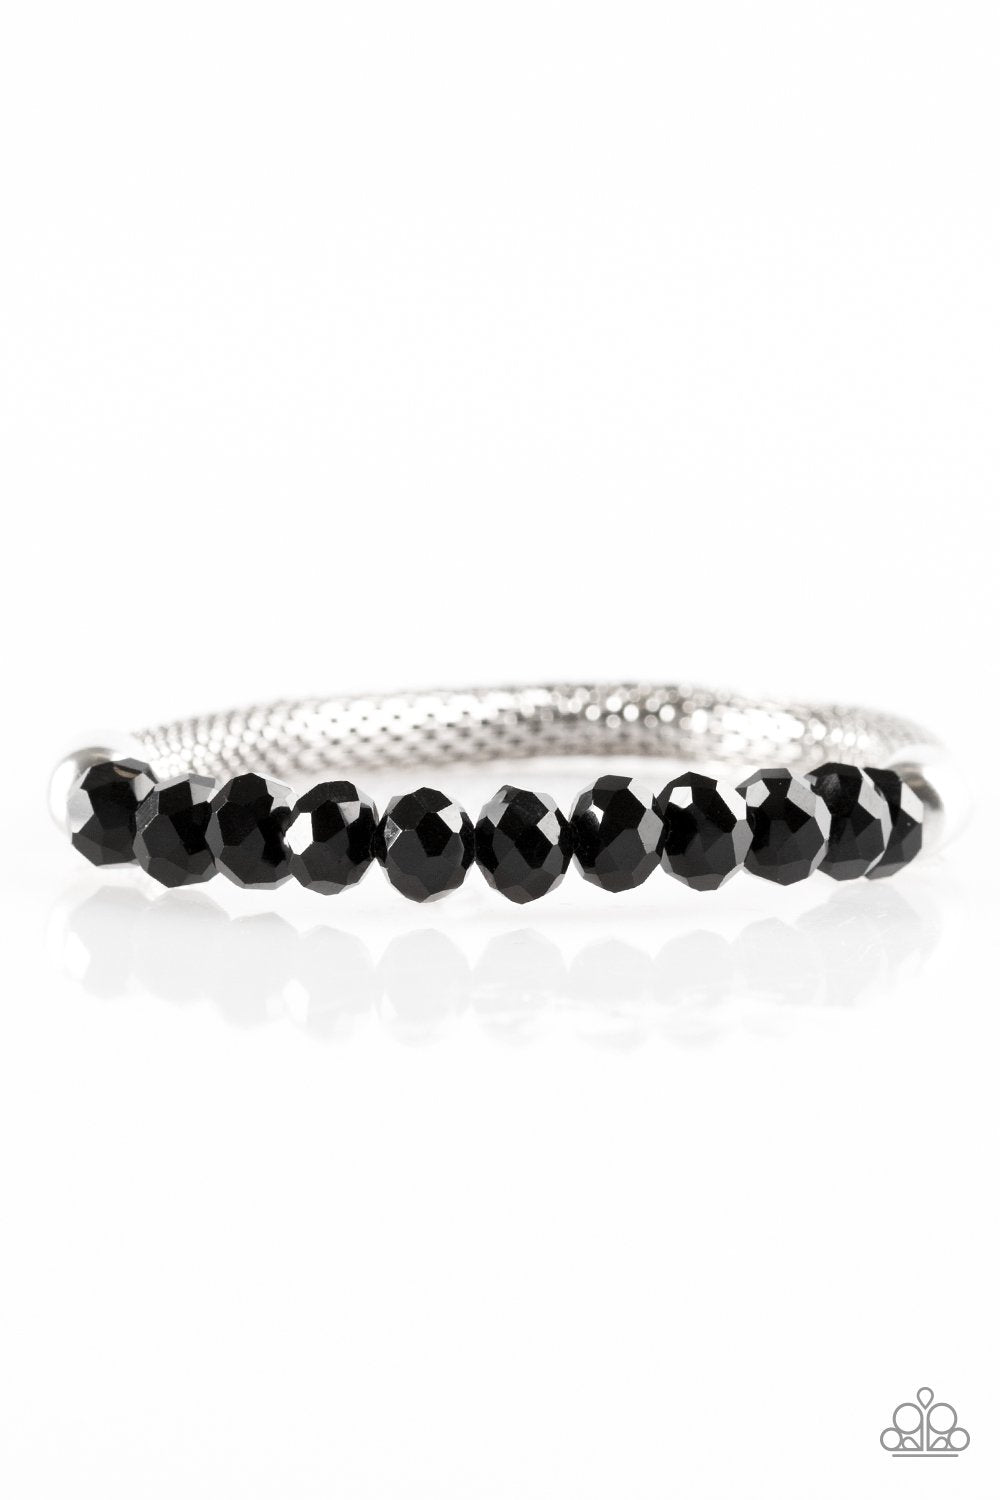 Glamorously Grunge Black Stretch Bracelet - Paparazzi Accessories-CarasShop.com - $5 Jewelry by Cara Jewels